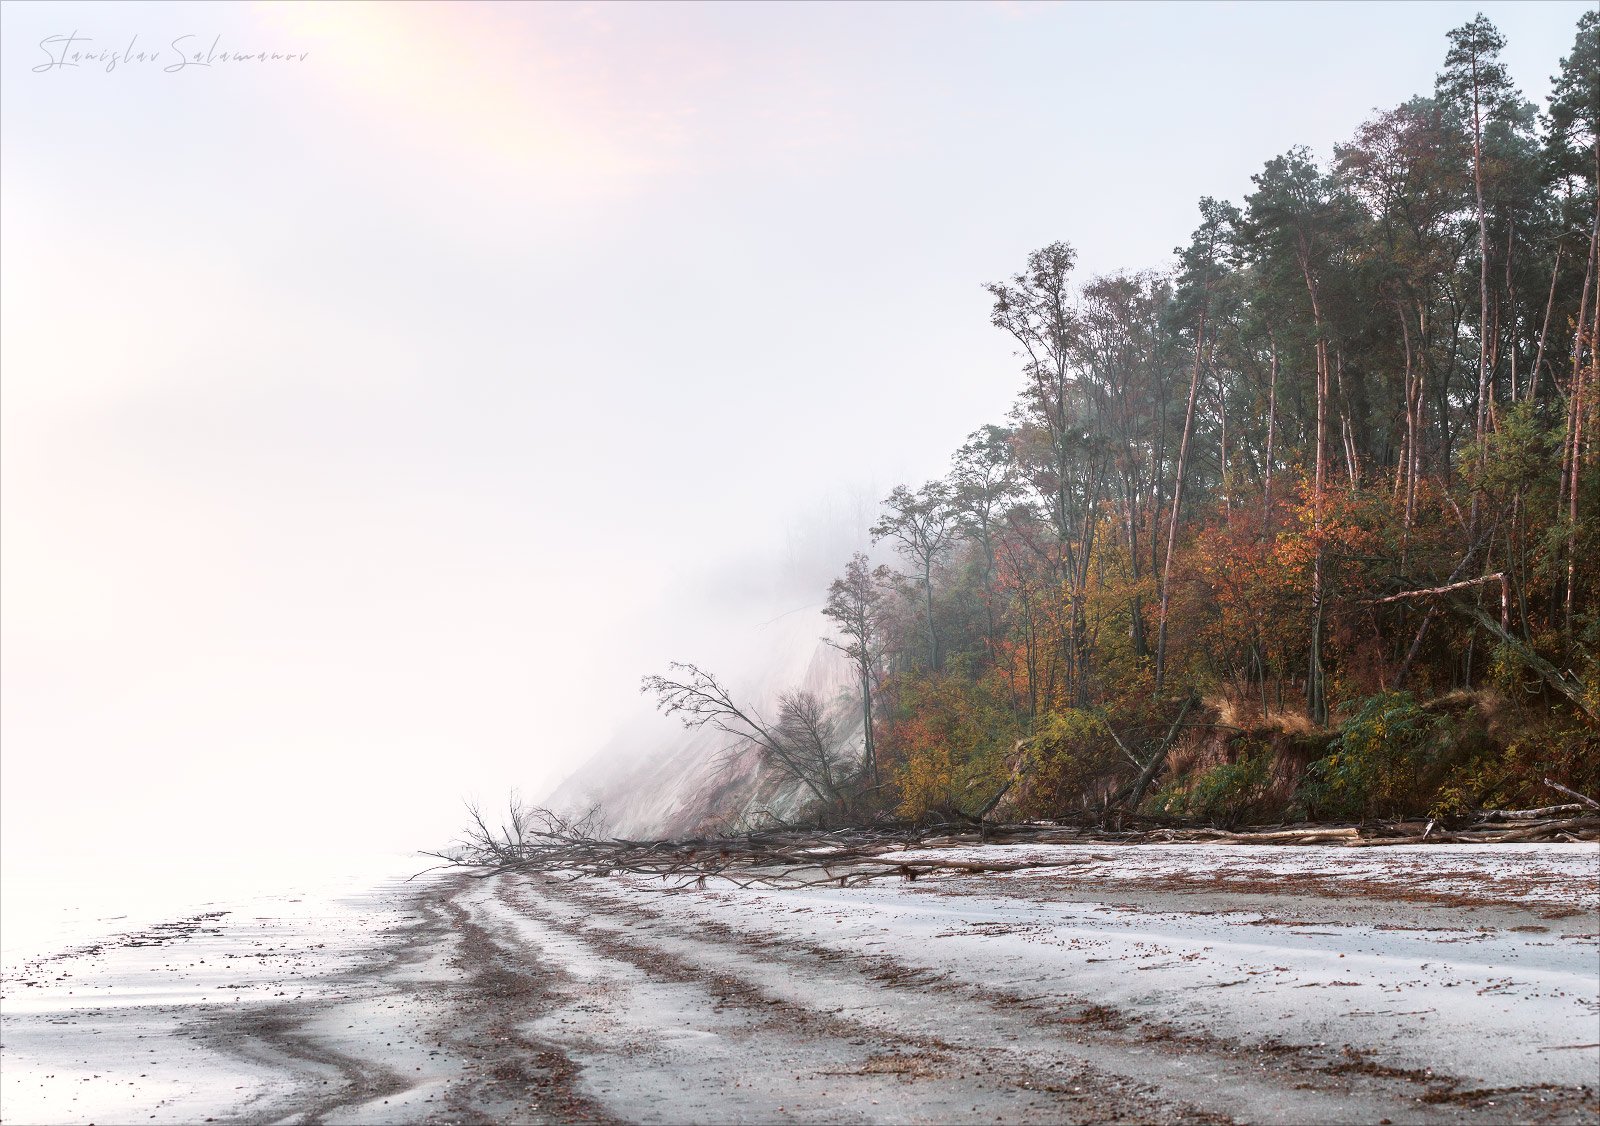 утро, туман, осень, река, берег, пляж, тишина, невесомость, воздушность, Станислав Саламанов